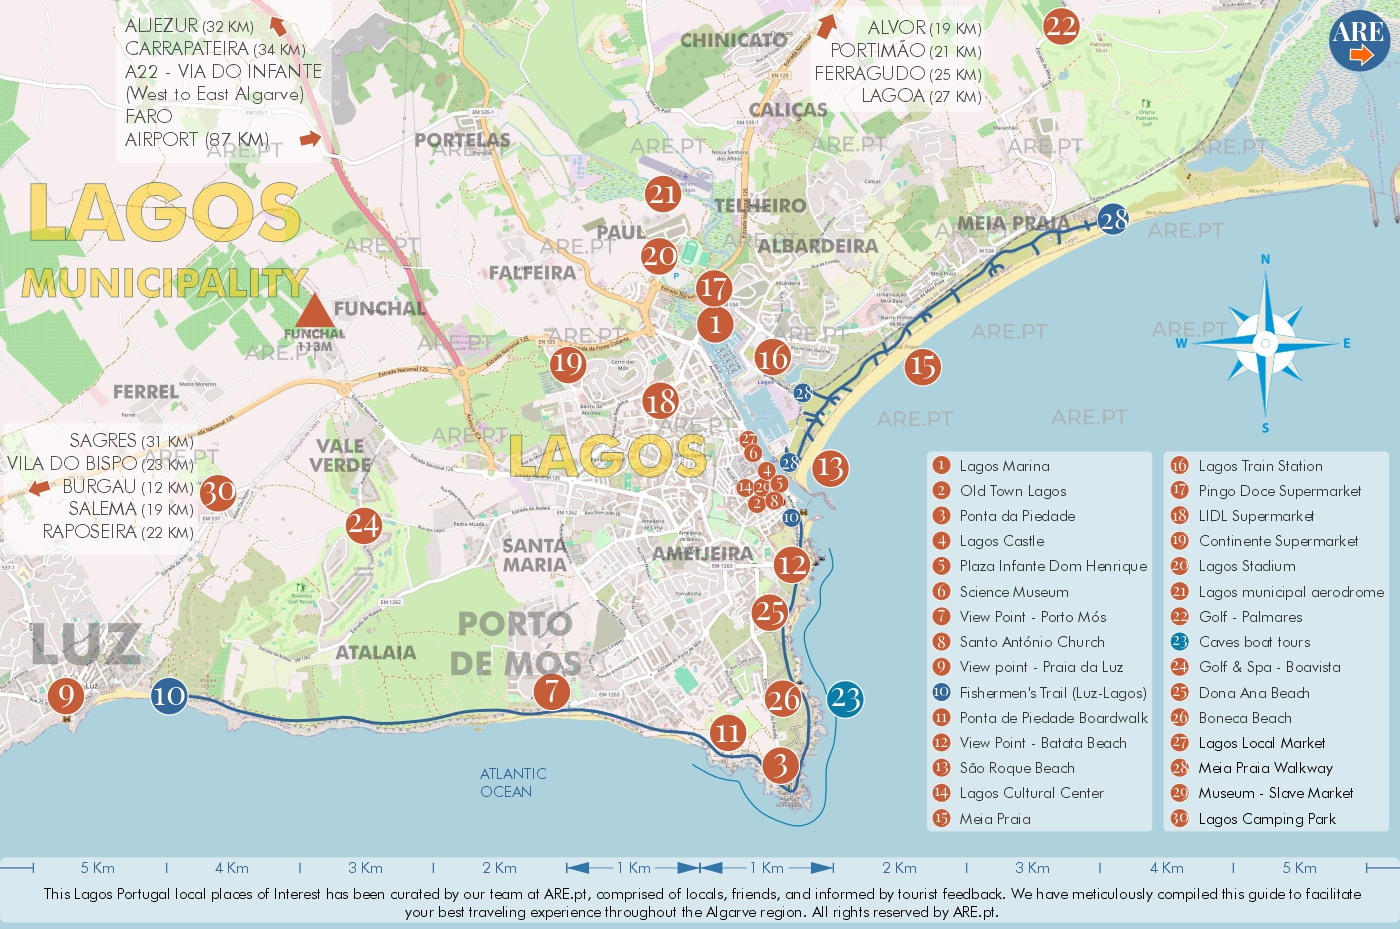 Mapa de Lagos e arredores, com principais pontos de interesse, localizações úteis e zonas residenciais. Distâncias às principais localidades do sul de Portugal